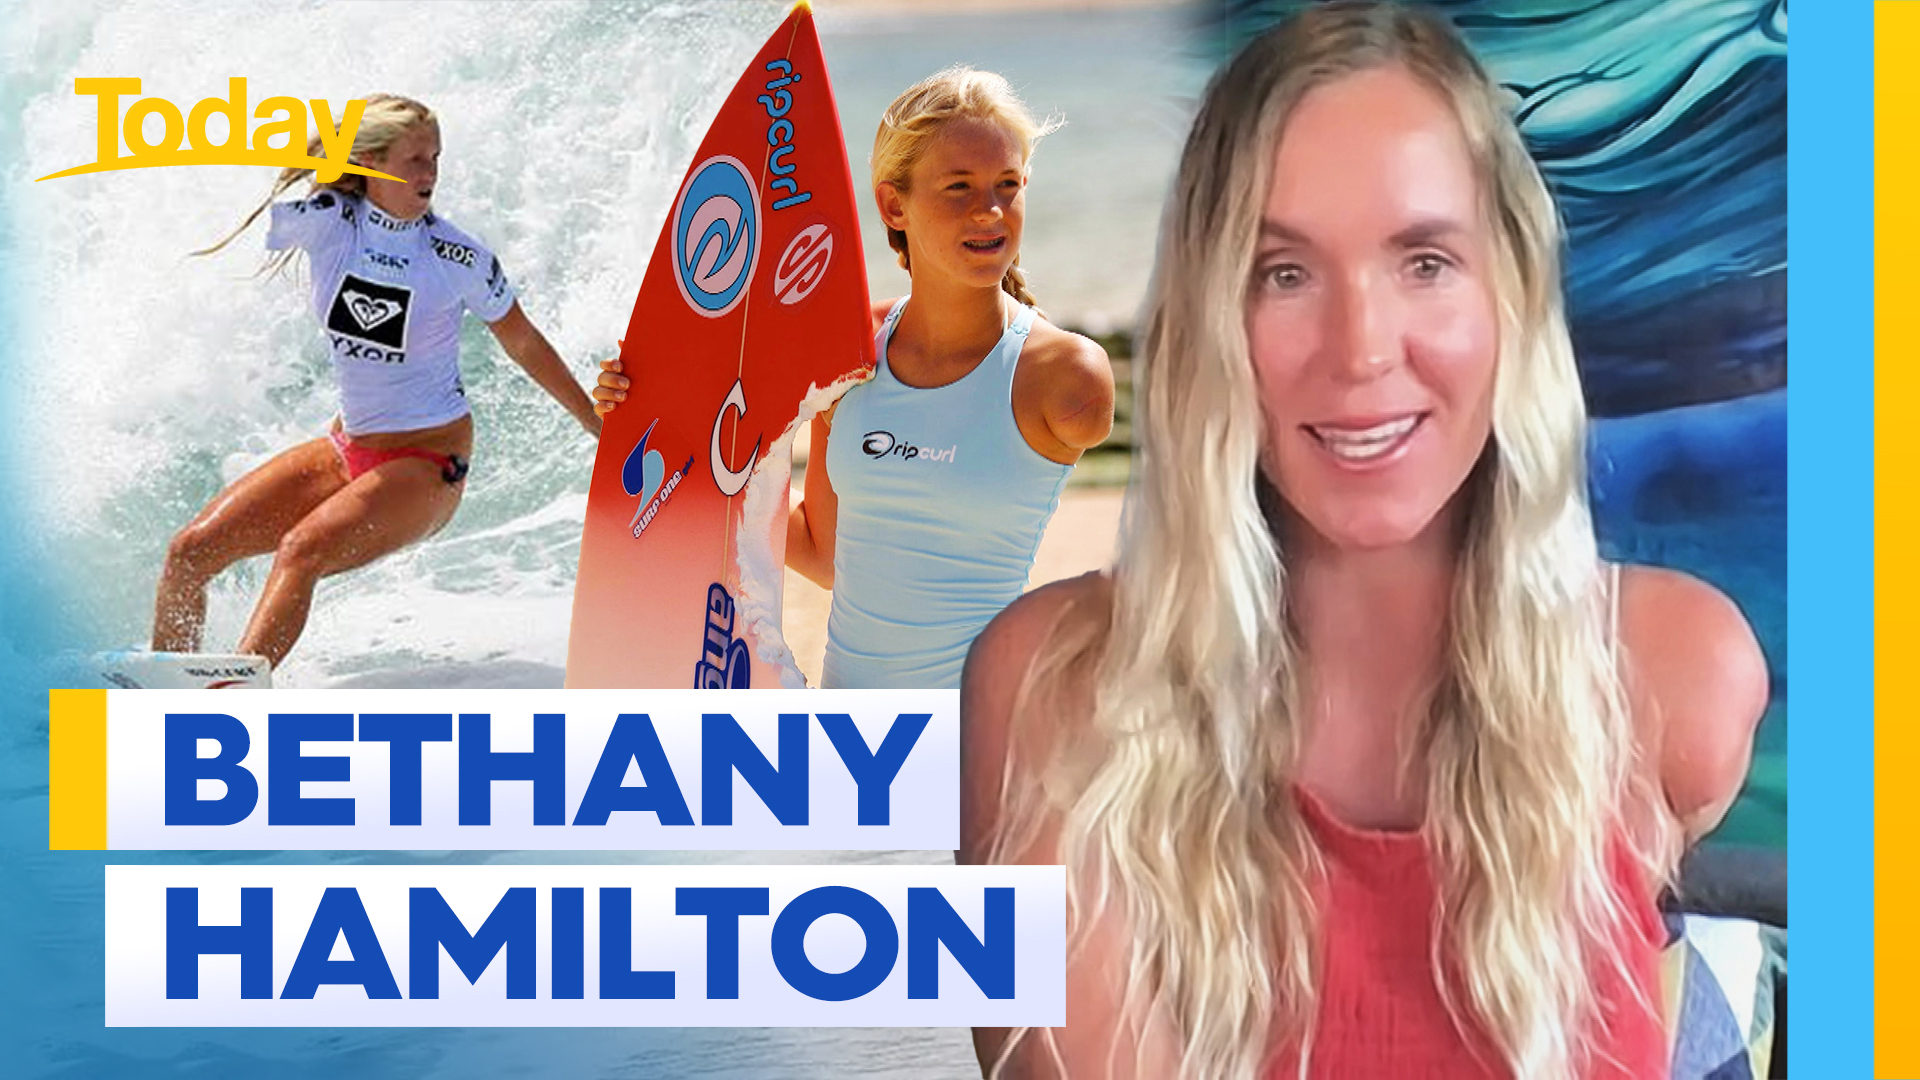 Major milestone for shark survivor Bethany Hamilton